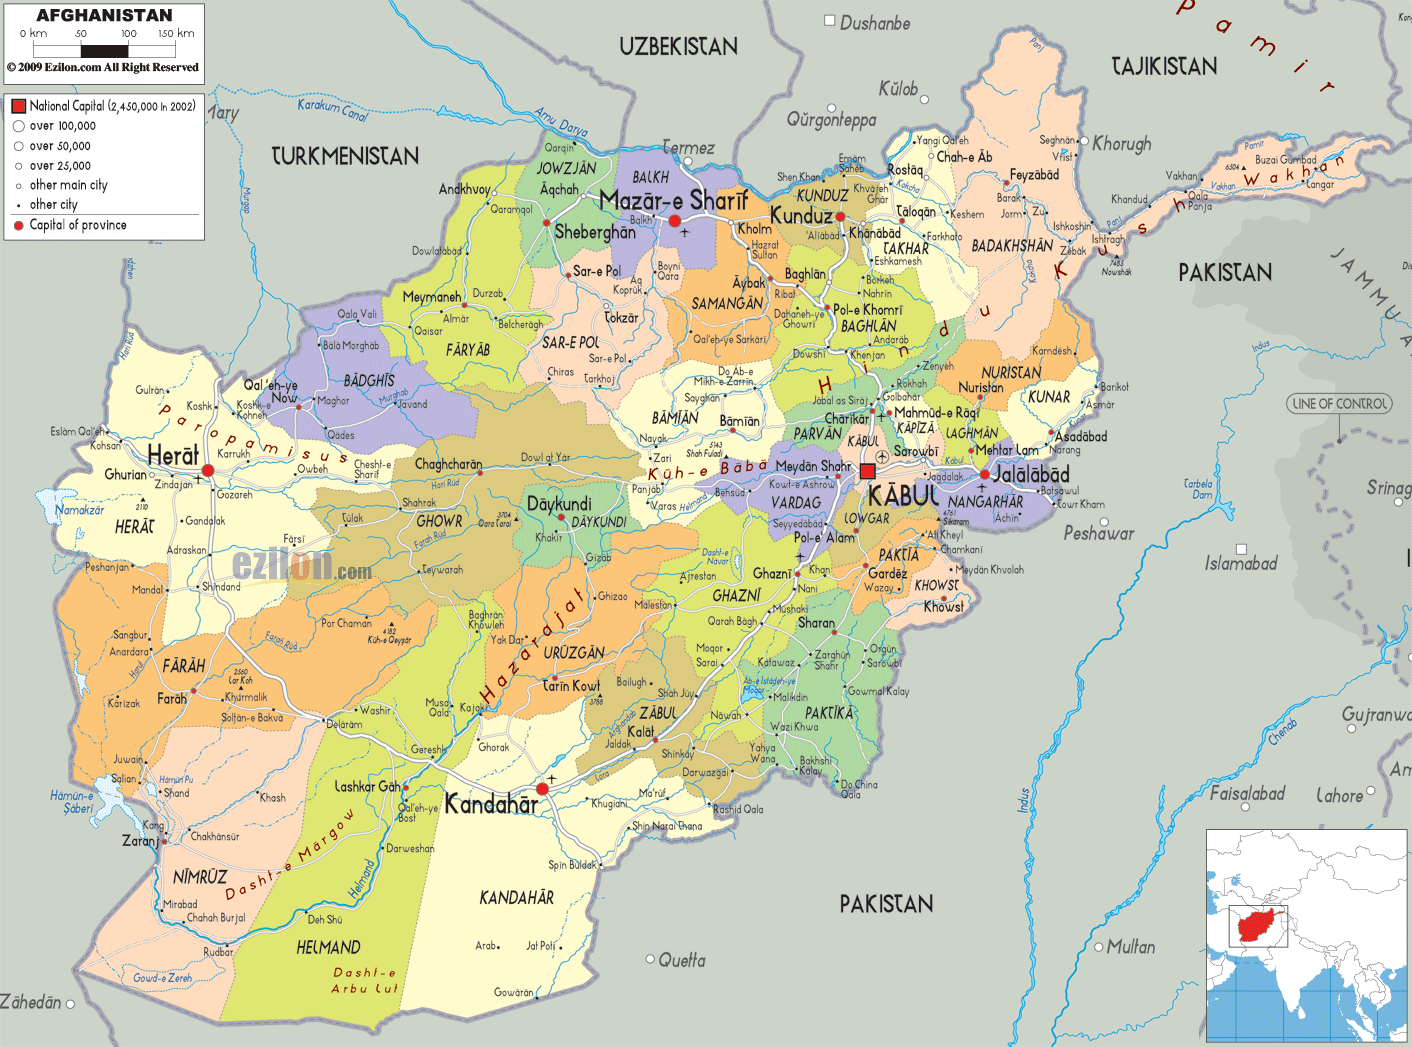 afganistan ulke bolgeler haritasi